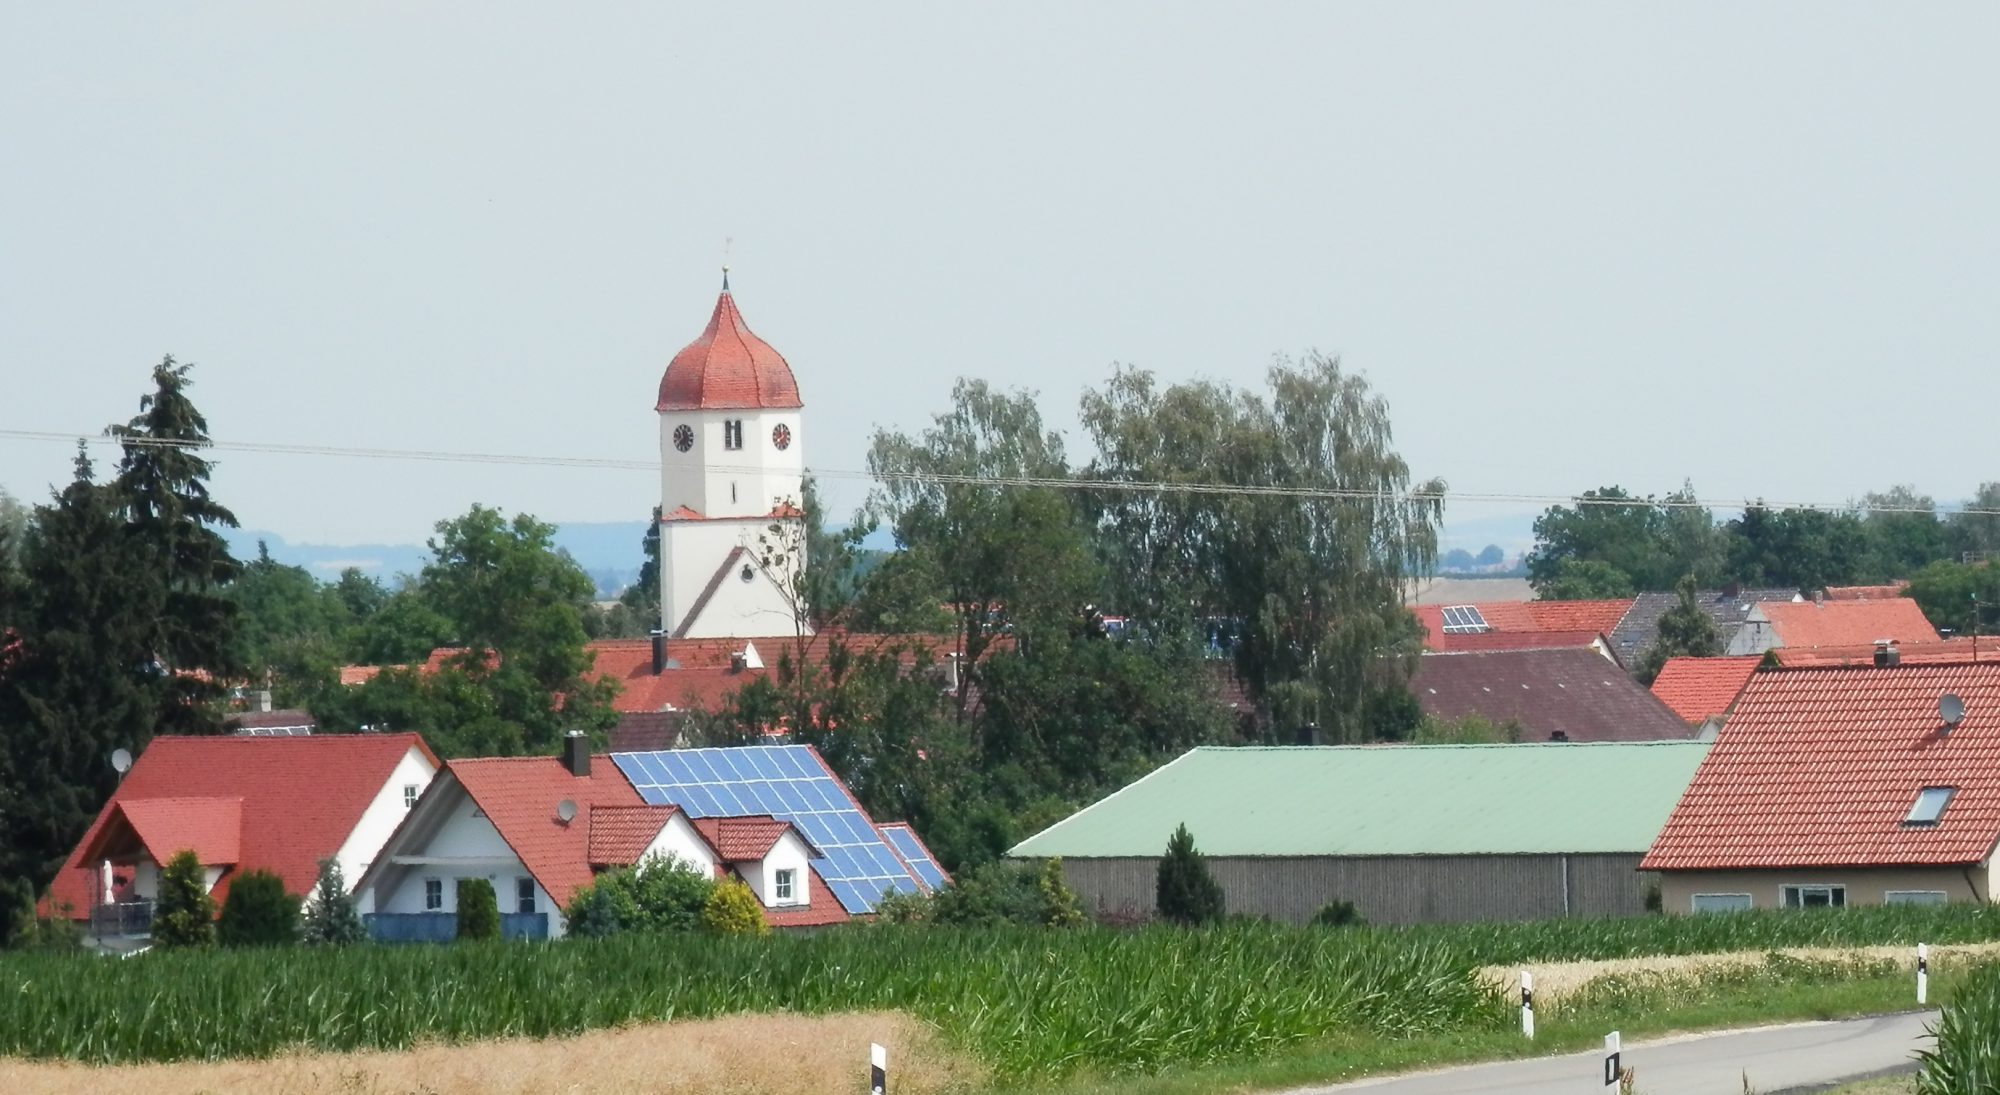 Evangelische Kirchengemeinden Hohenaltheim-Niederalteim, Schmähingen-Reimlingen und Balgheim